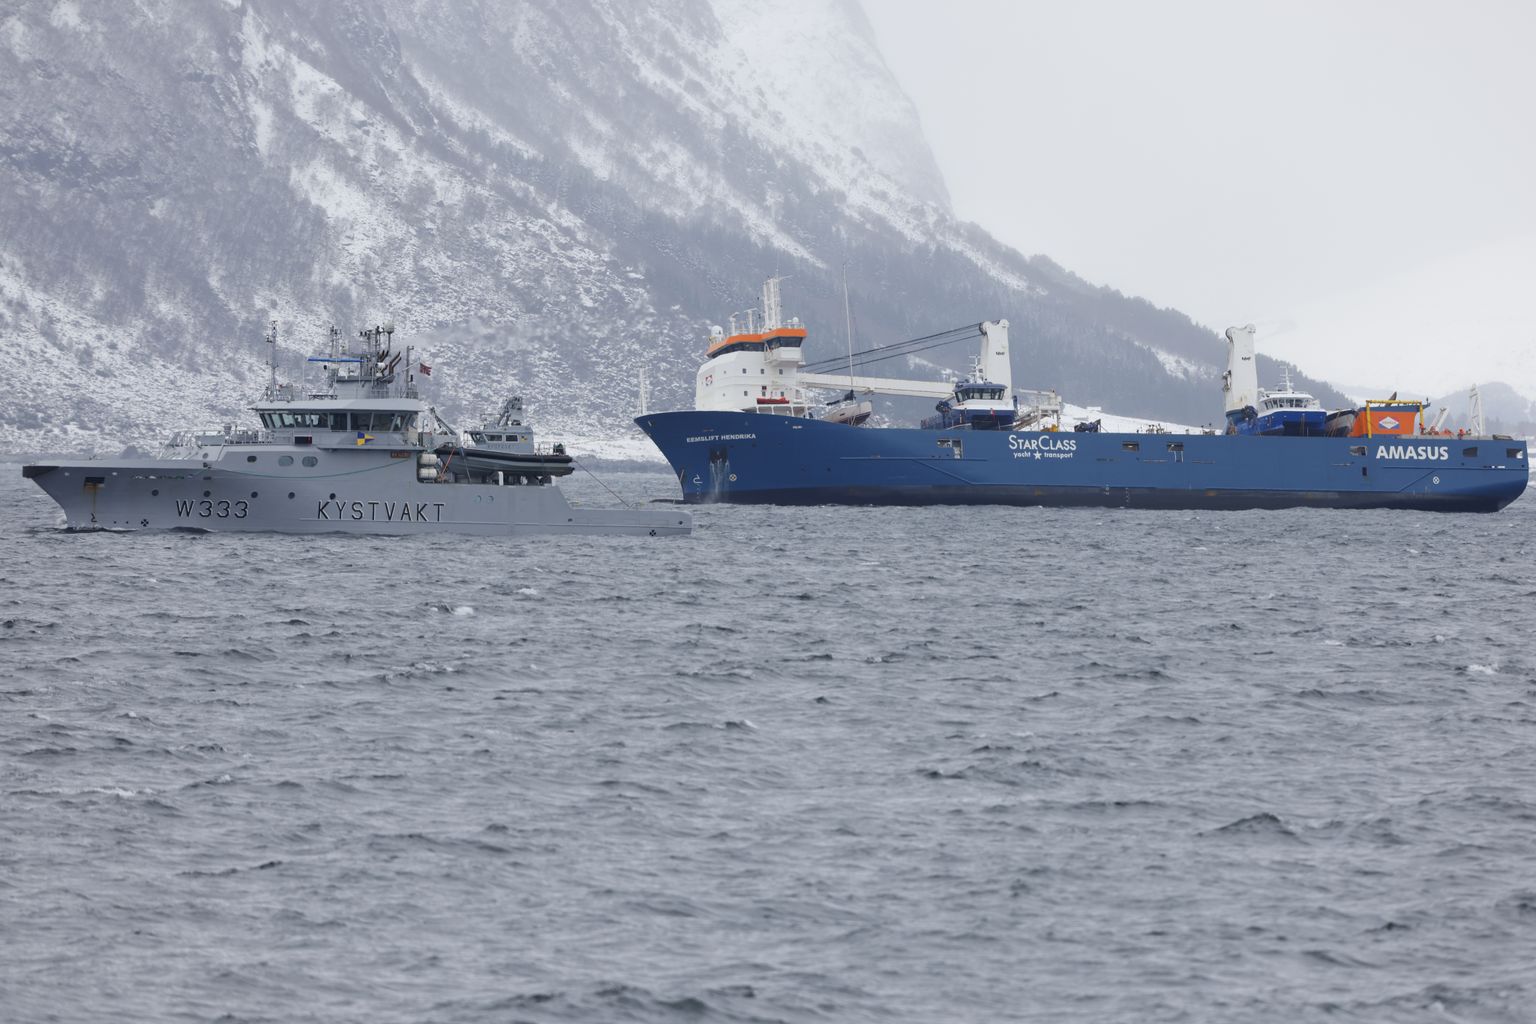 Taani kaubalaev Eemslift Hendrika pääses uppumisest tormisel merel ning jõudis täna merepäästjate trossi otsas Alesundi sadamasse Norra rannikul.